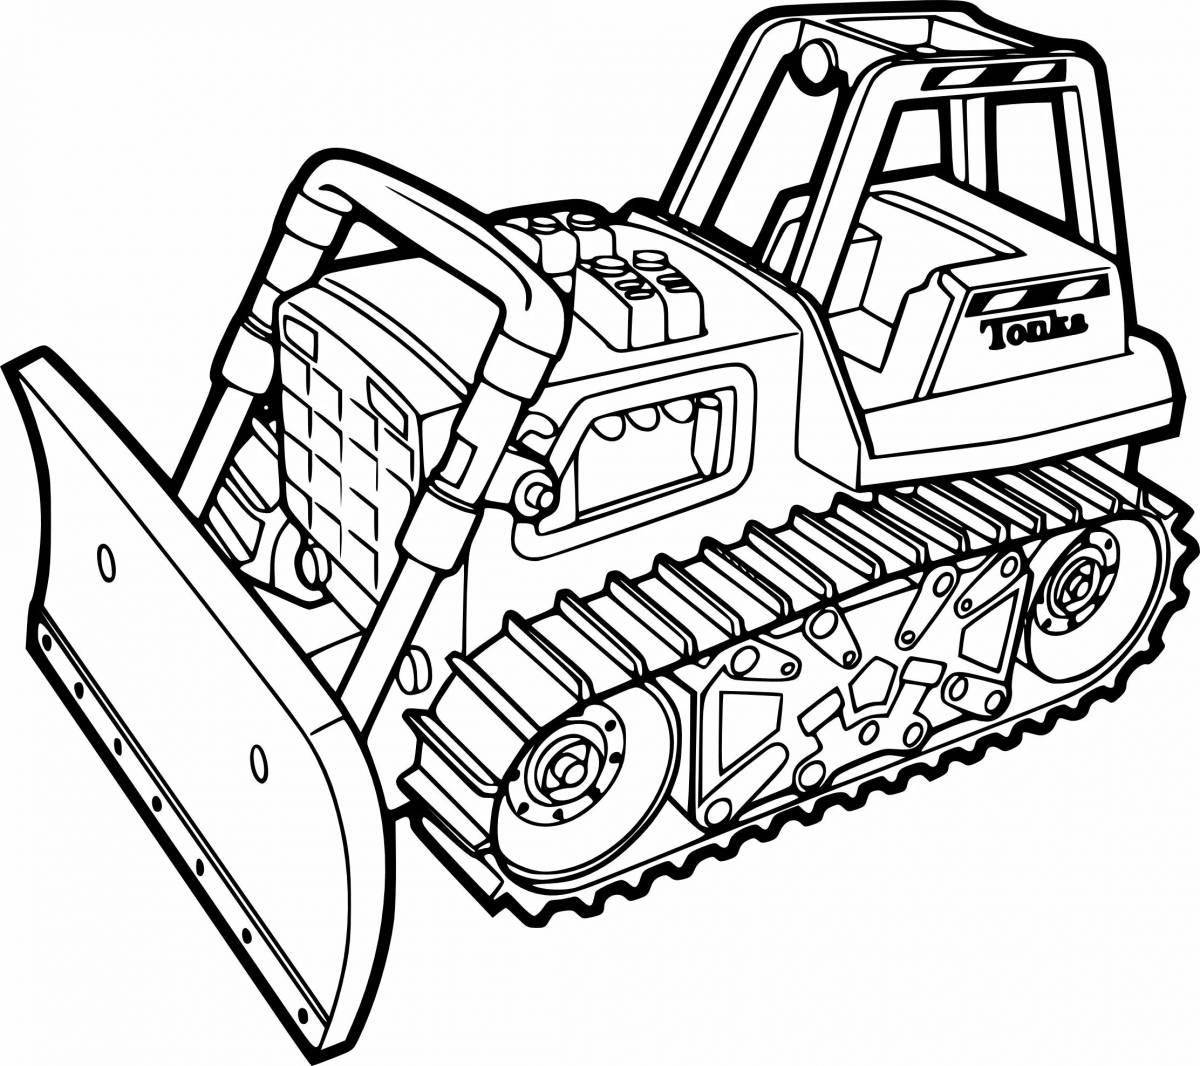 A fun coloring book bulldozer for kids